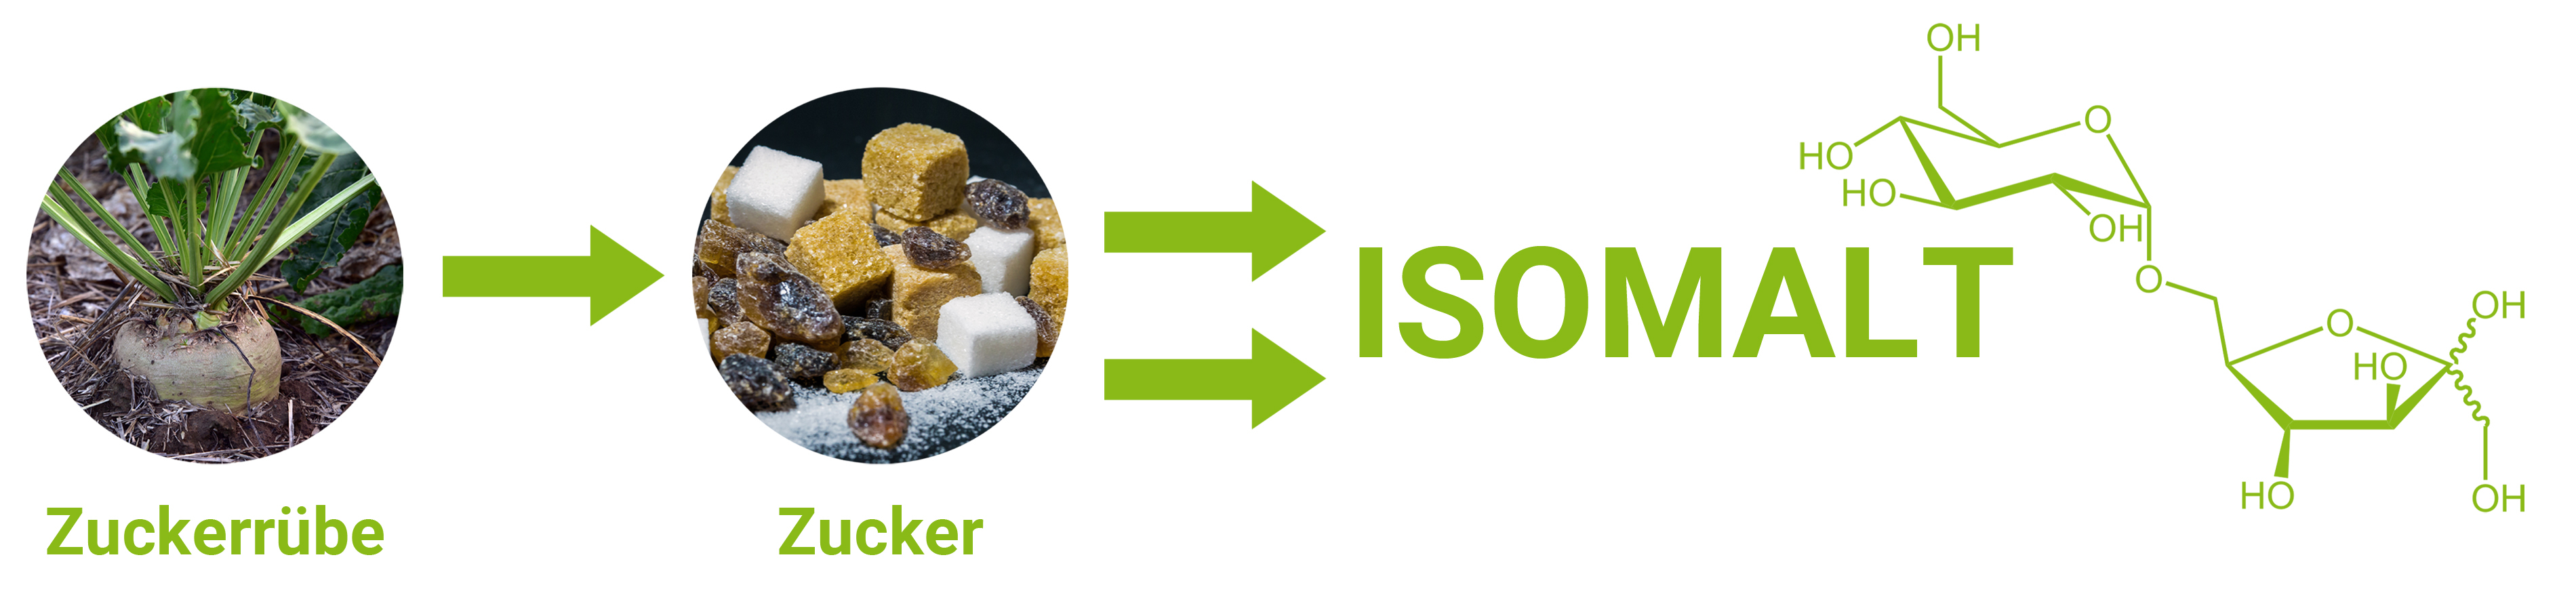 L'Isomalto è un sostituto dello zucchero derivato dal saccarosio. 